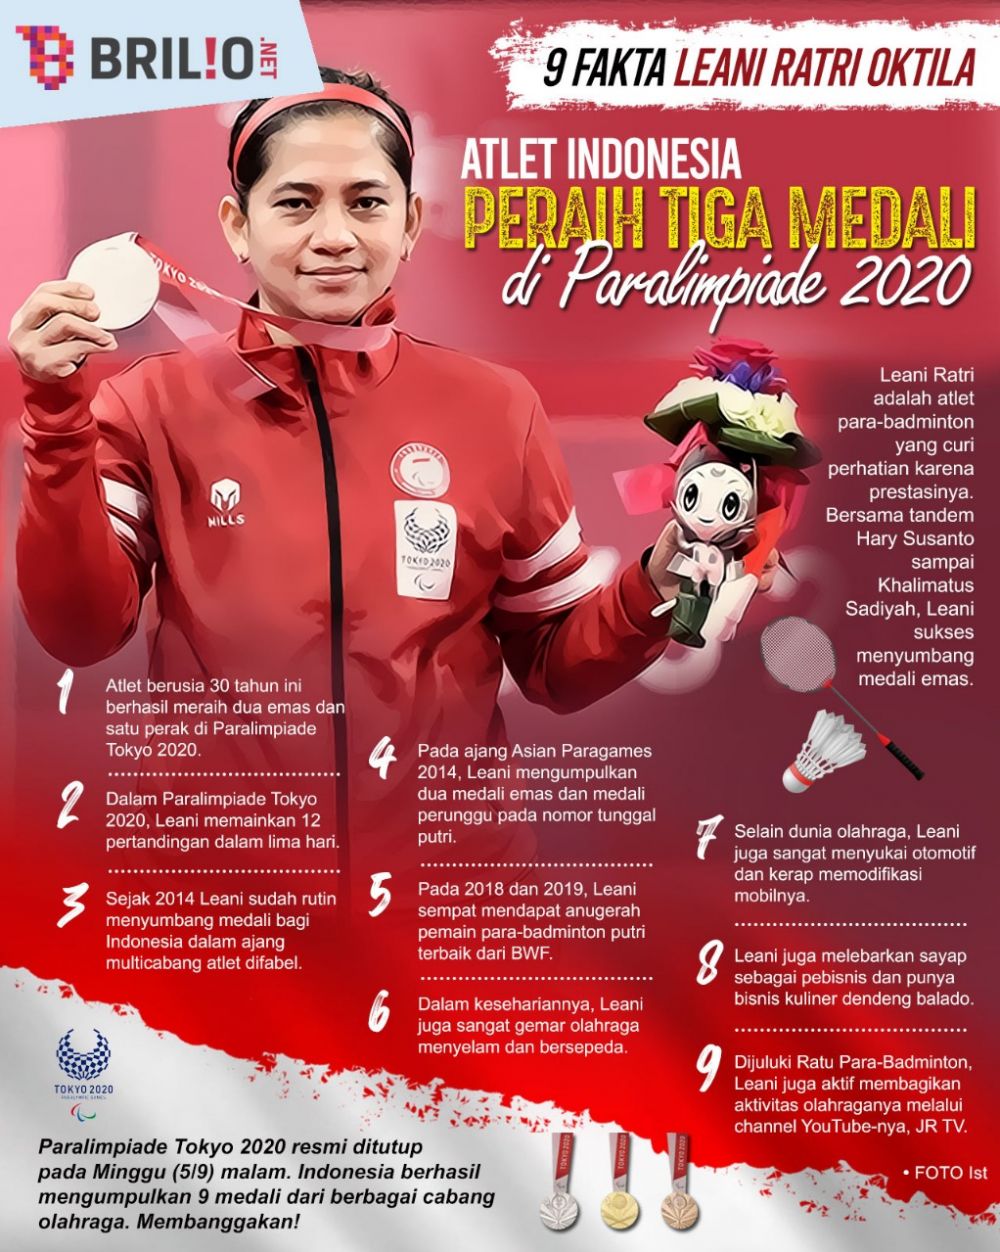 11 Potret Leani Ratri Oktila, peraih tiga medali di Paralimpiade 2020